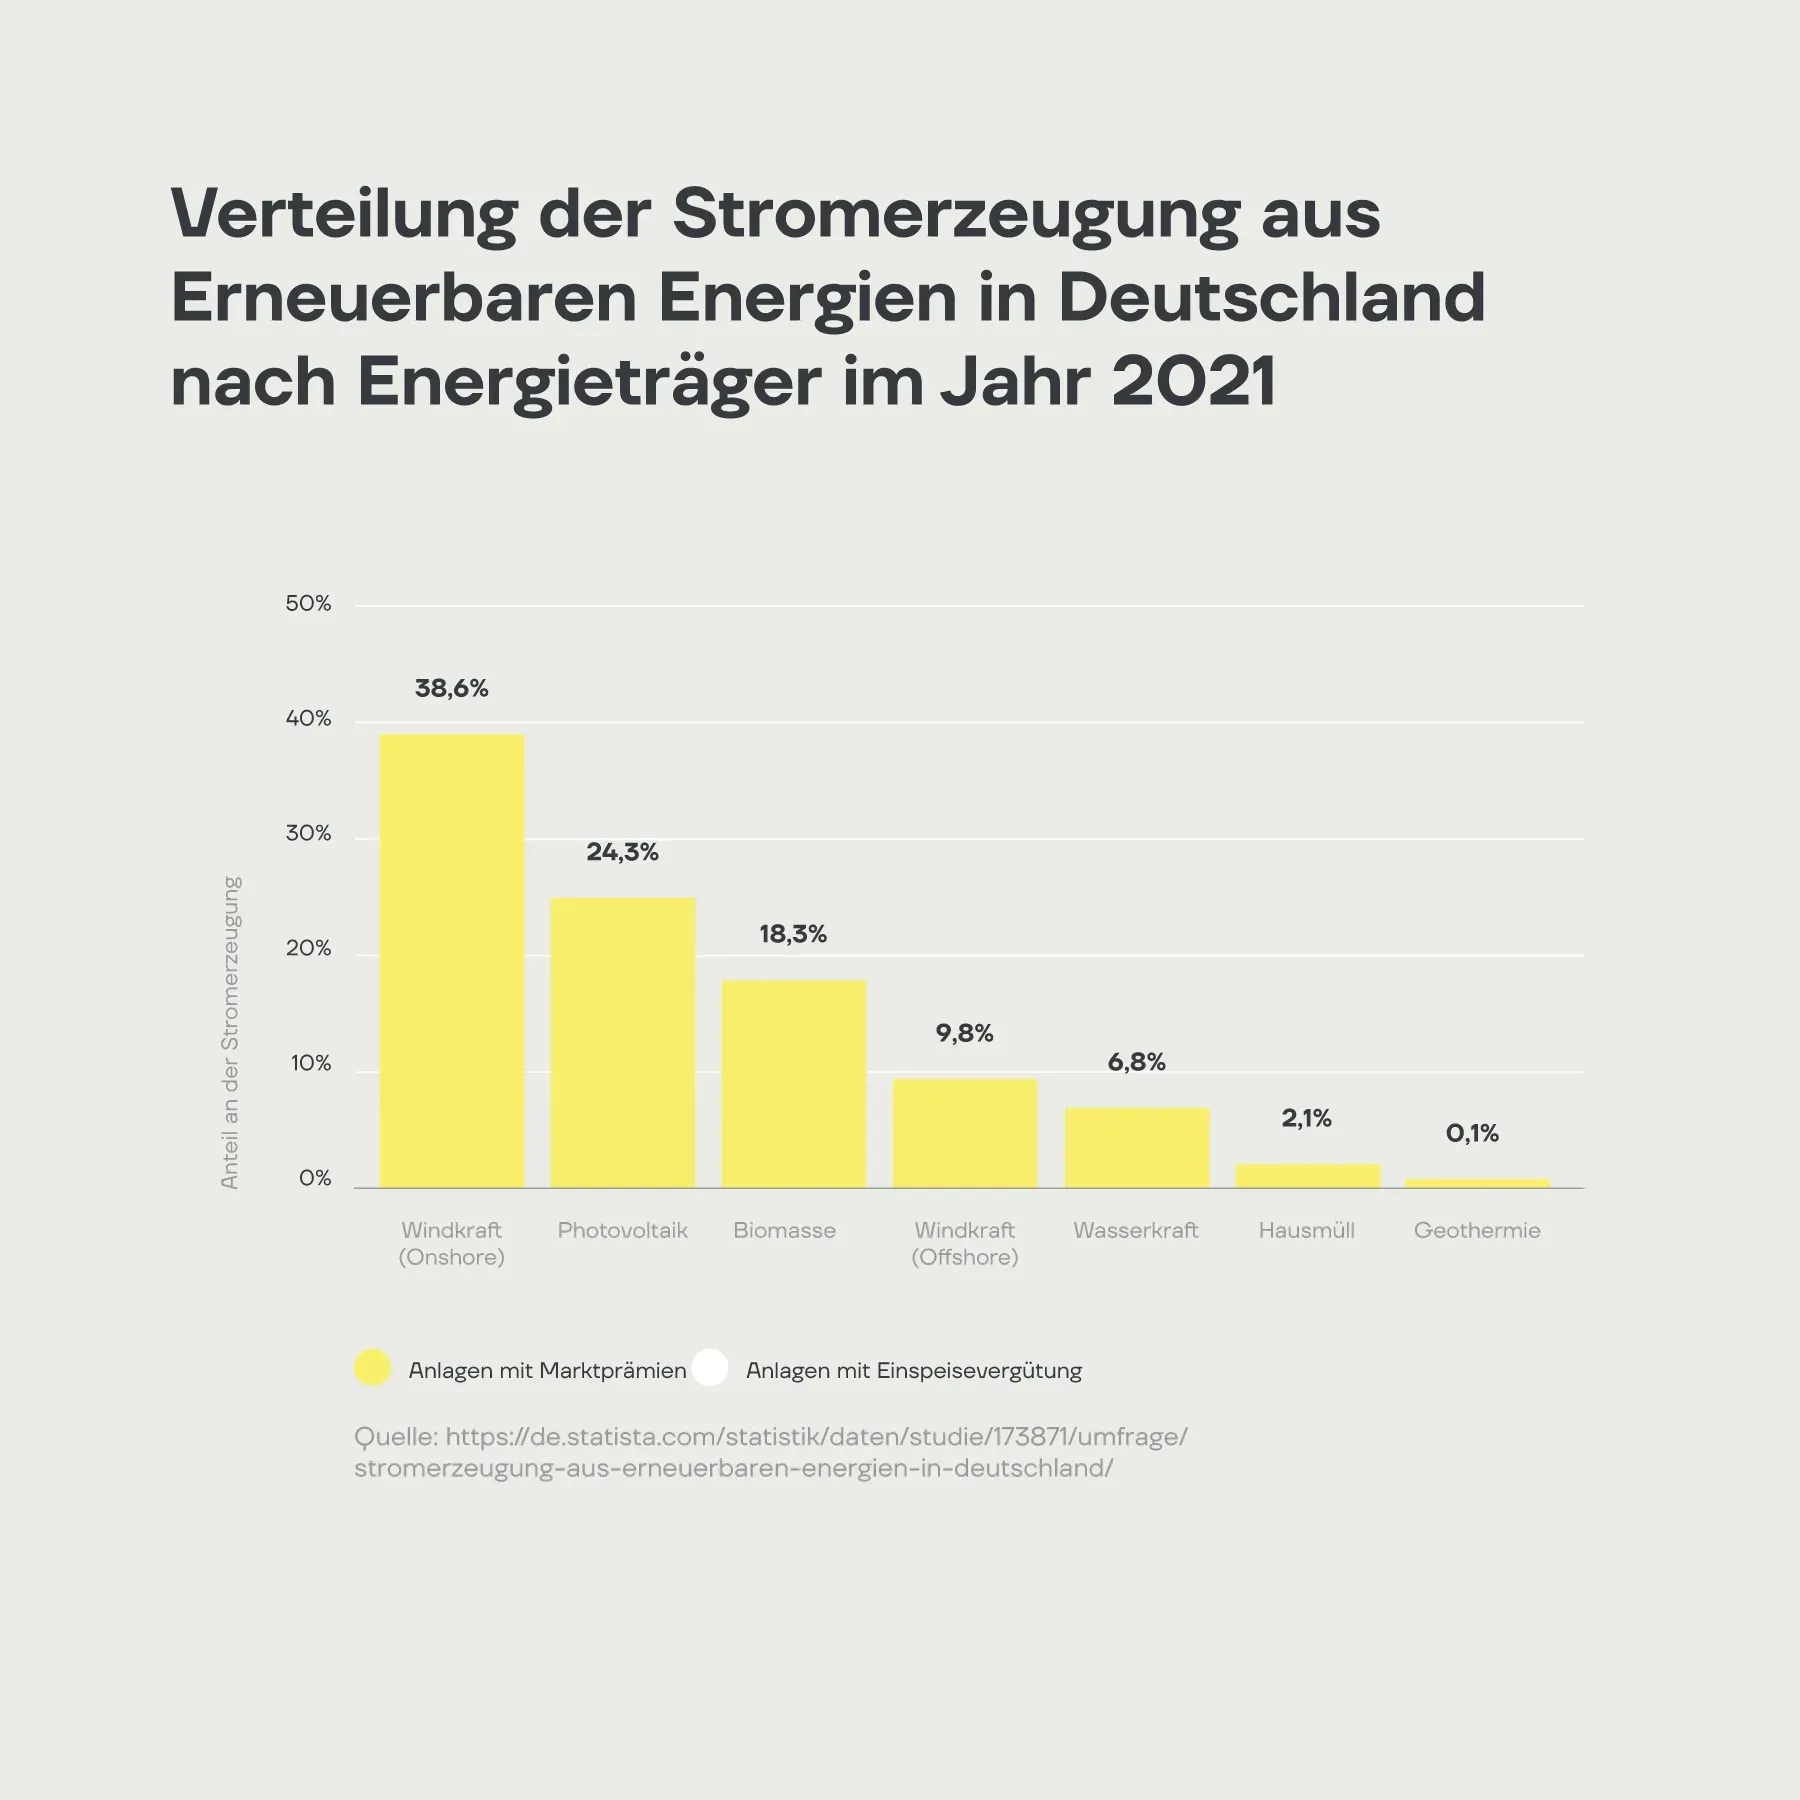 Verteilung der Stromerzeugung aus Erneuerbaren Energien in Deutschland nach Energieträger im Jahr 2021